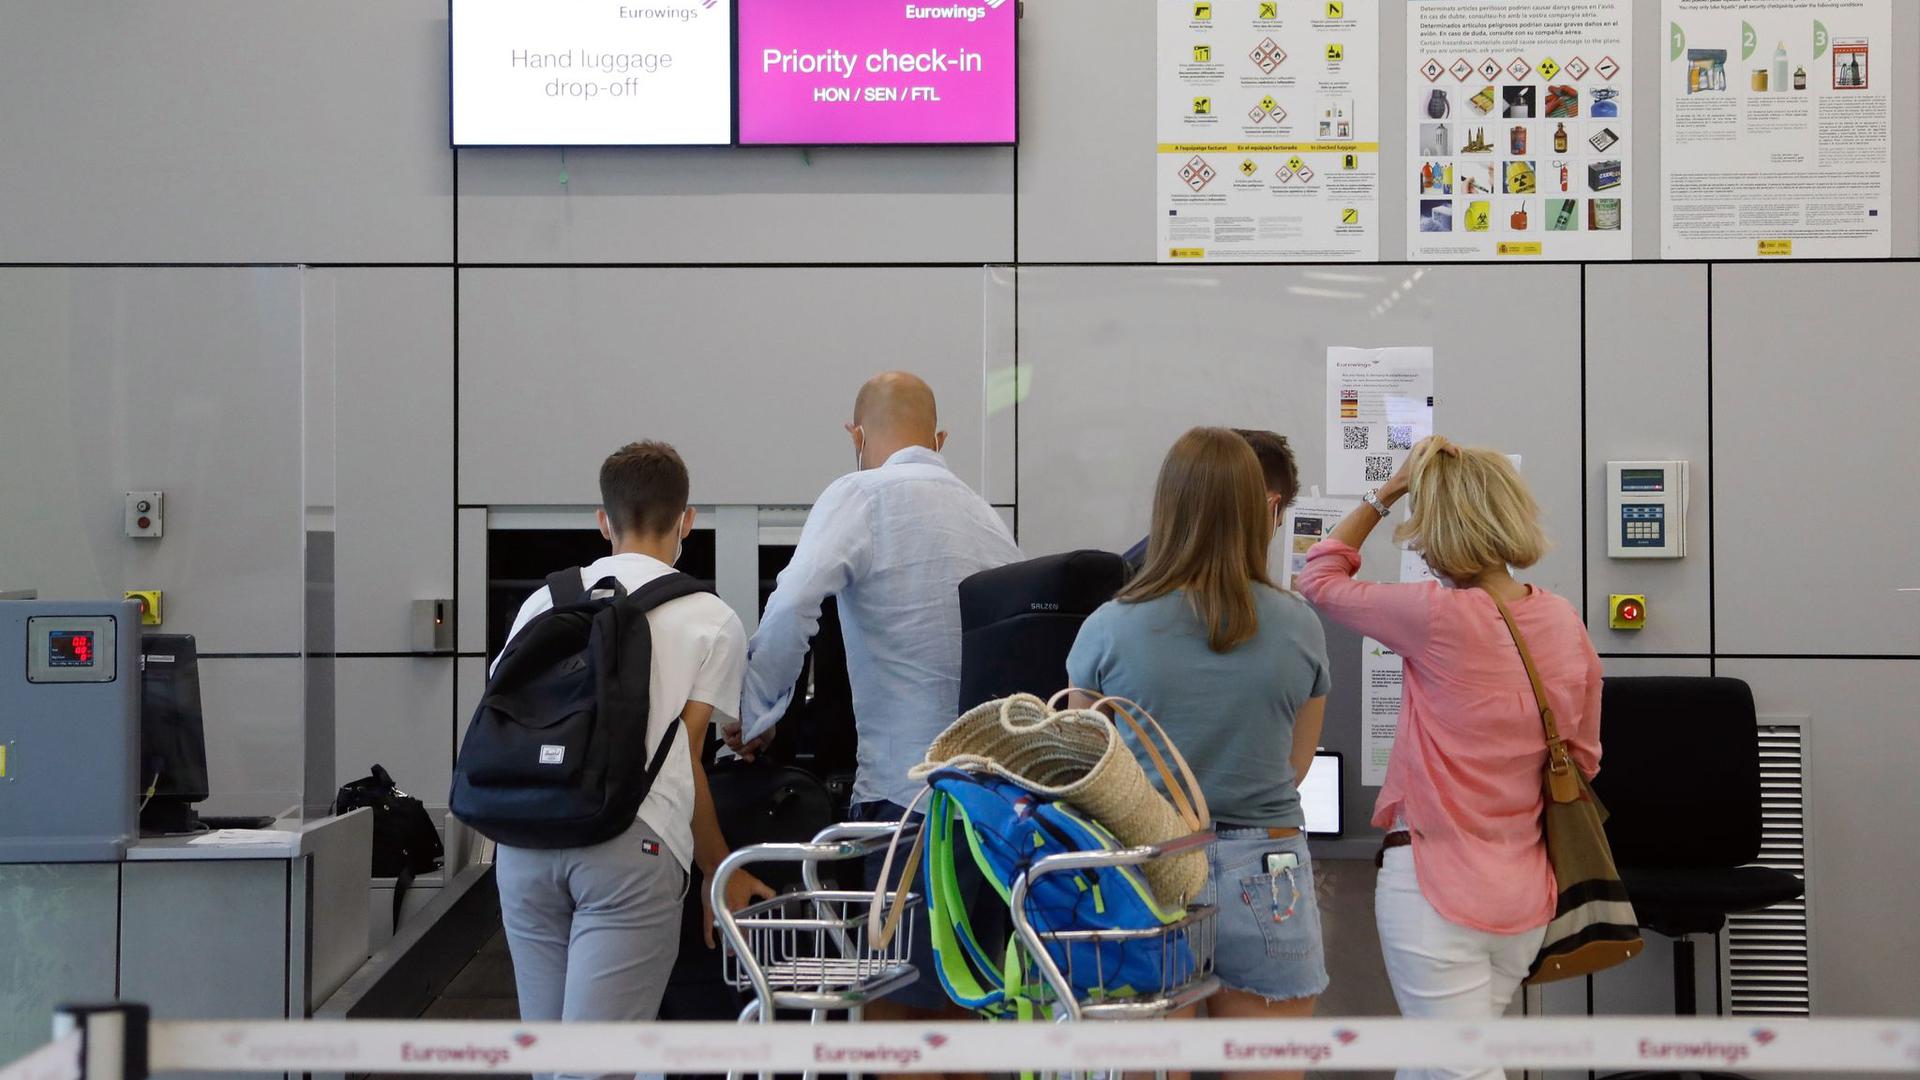 Fluggäste geben im Abflugbereich des Flughafens von Palma de Mallorca am Eurowings-Schalter ihre Koffer ab.